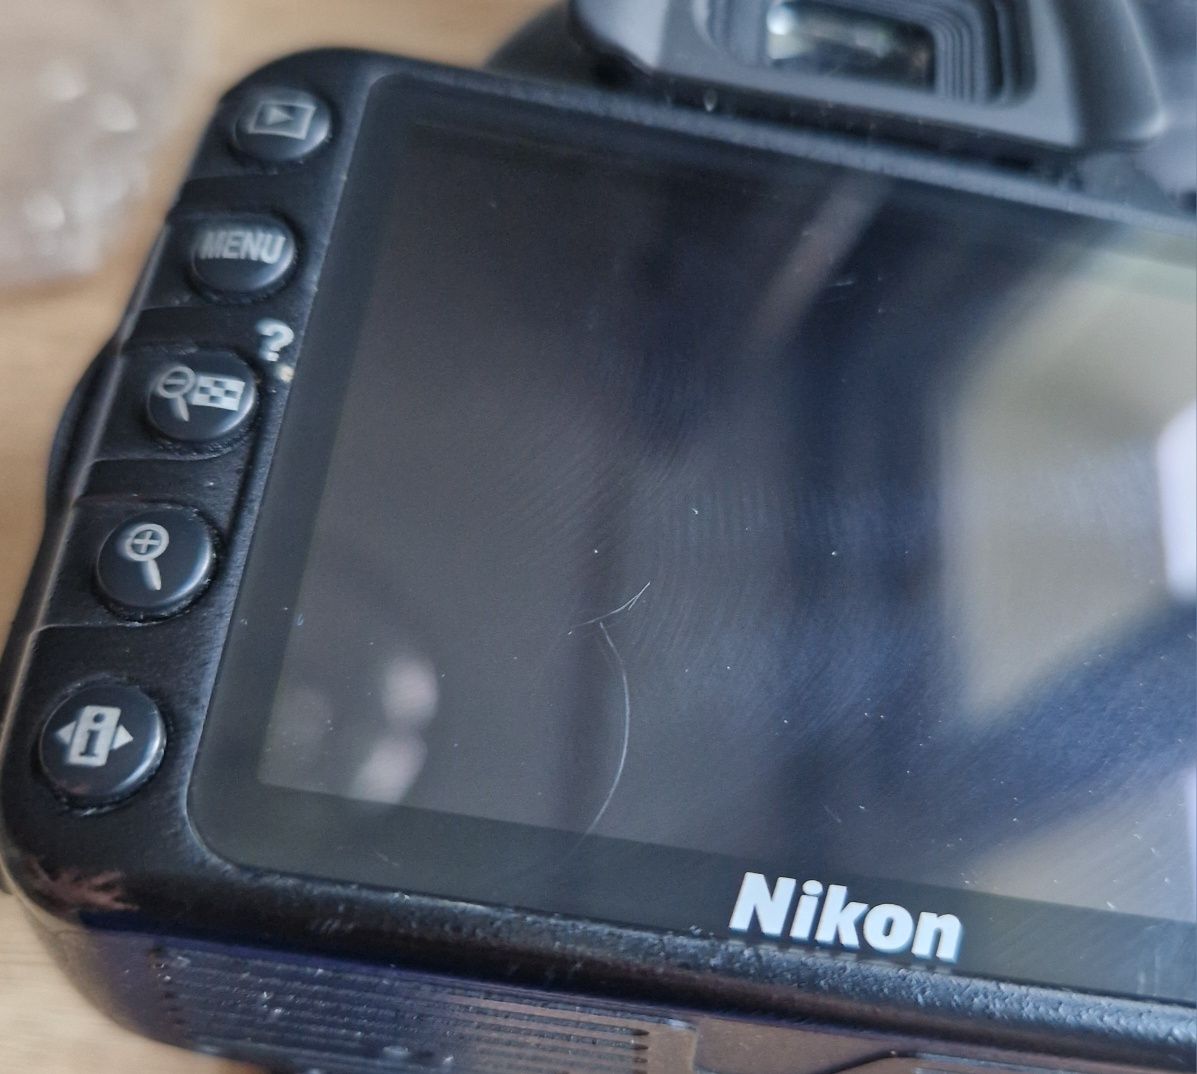 Aparat Nicon D3100 z obiektywem Nikon DX AF-S Nikkor 18-55 mm VR